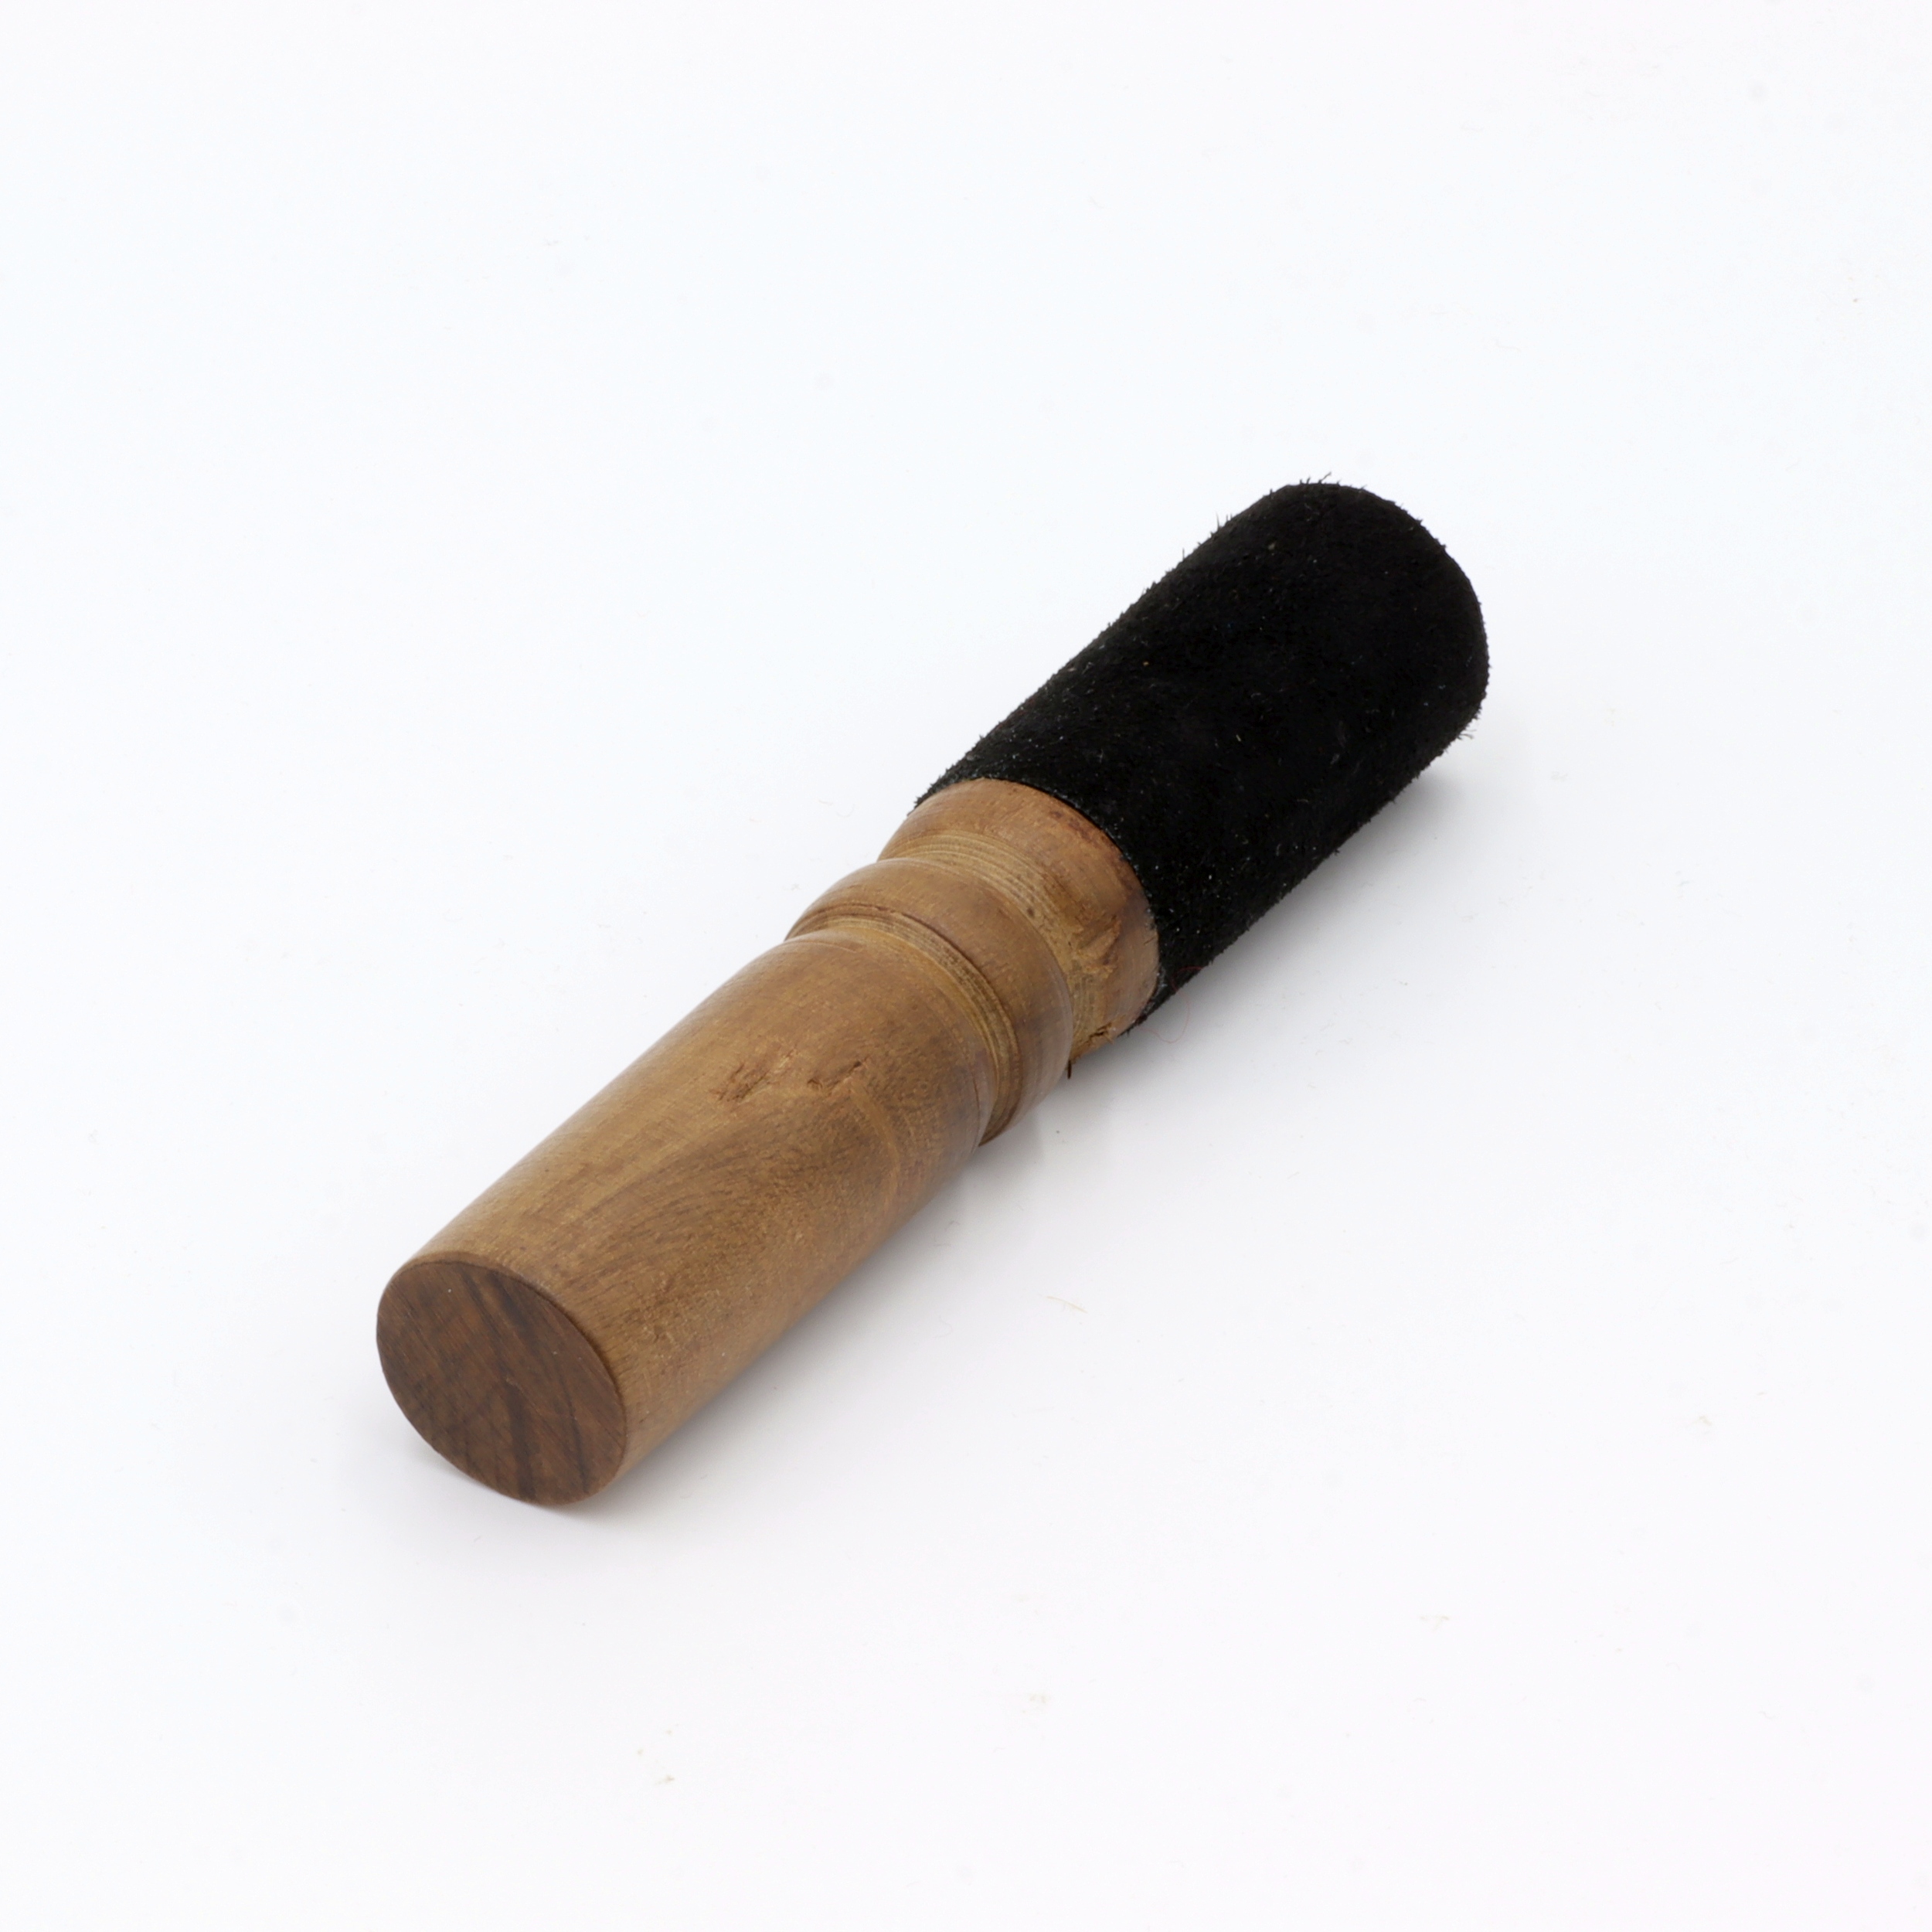 Klöppel für Klangschalen in XS, mit schwarzem Leder umwickelter Kopf und verzierter Holz-Griff - handgemacht und fair gehandelt aus Nepal